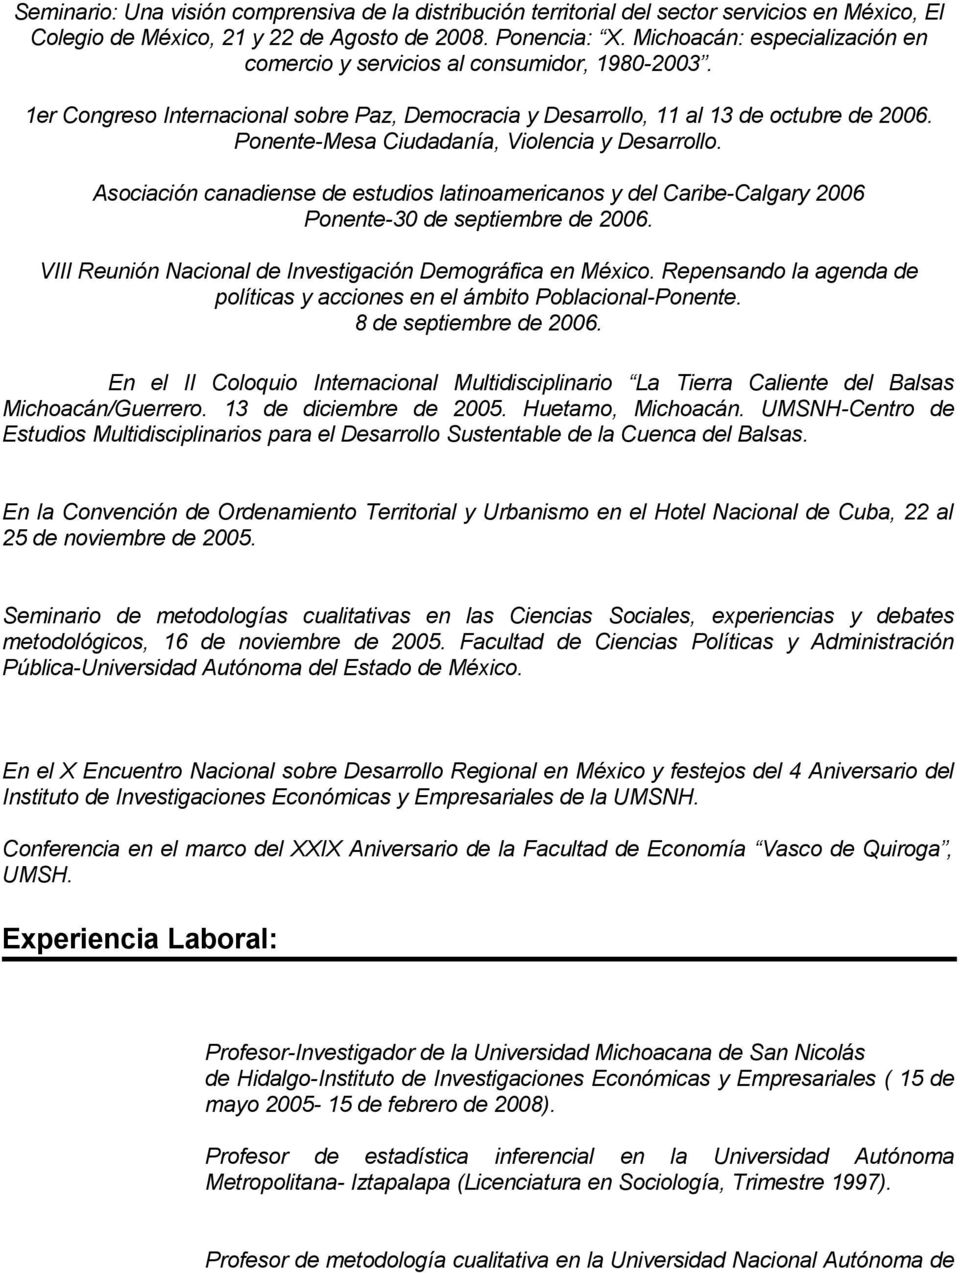 Ponente-Mesa Ciudadanía, Violencia y Desarrollo. Asociación canadiense de estudios latinoamericanos y del Caribe-Calgary 2006 Ponente-30 de septiembre de 2006.